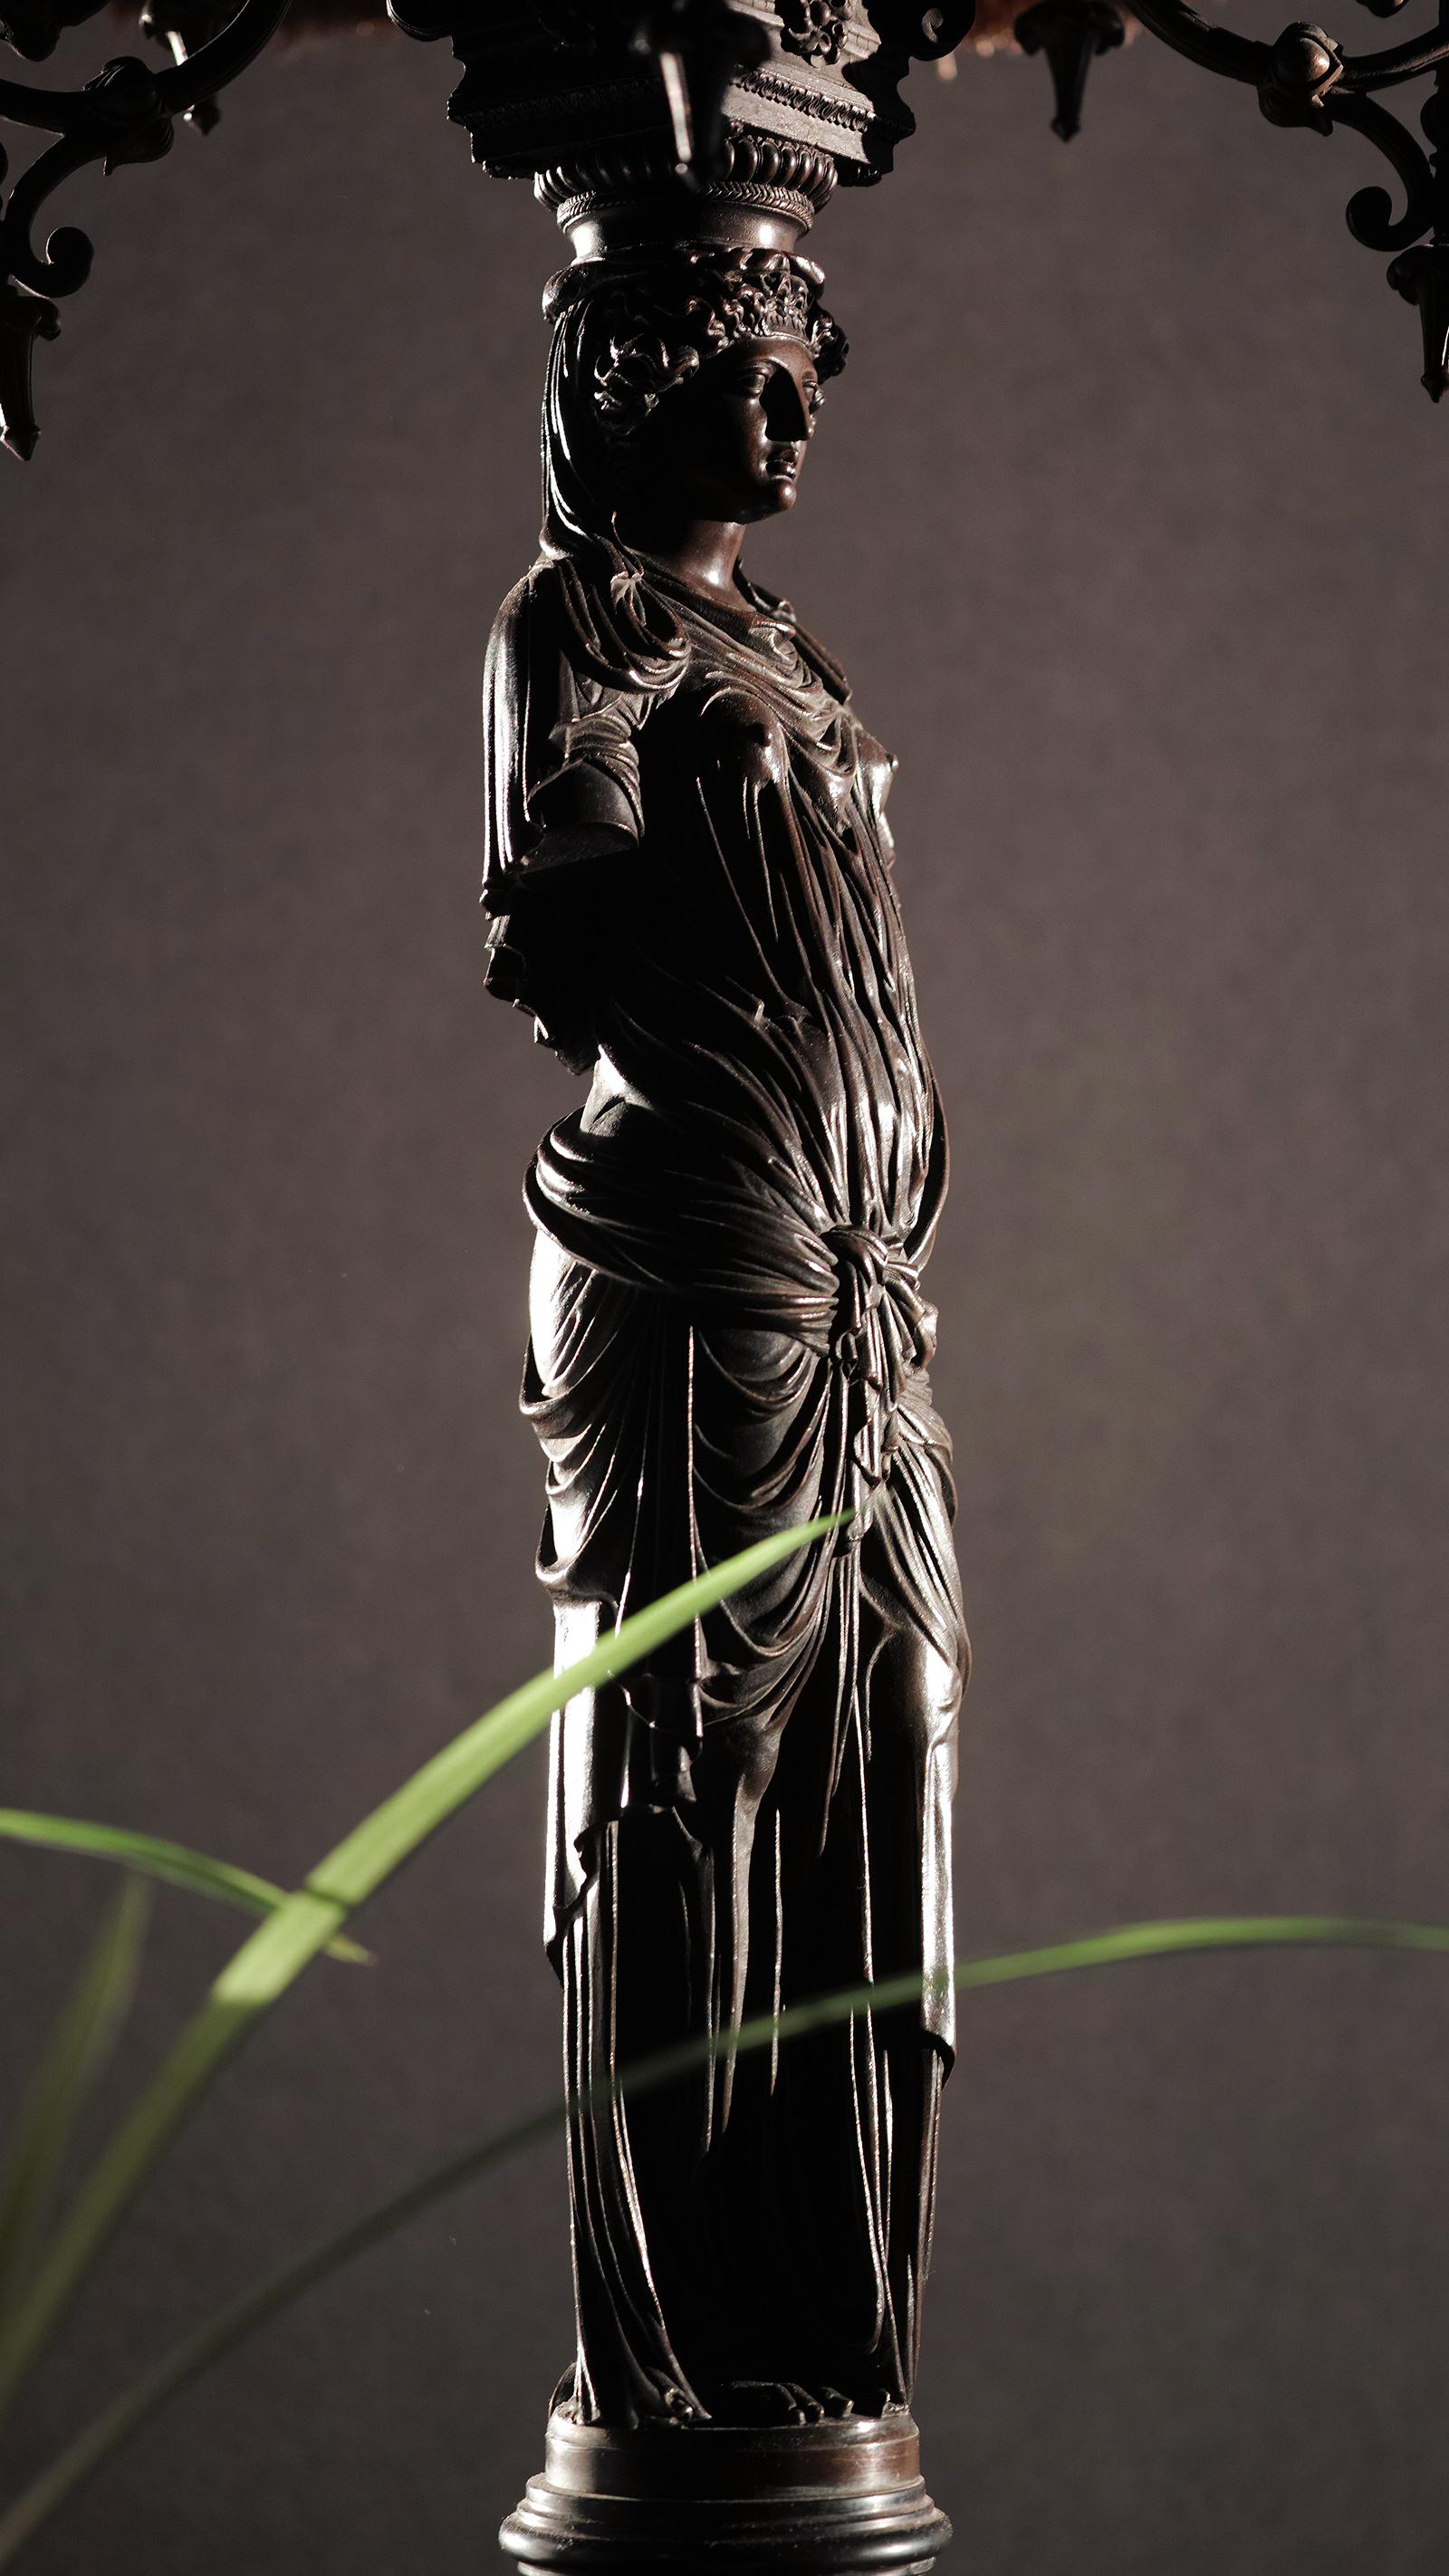 Nous vous présentons cette réduction mécanique en bronze français des cariatides de Jean Goulon au Louvre. Le bronze repose sur une base en marbre noir et est surmonté d'un candélabre avec de fausses bougies en bois. L'abat-jour en tissu froncé est